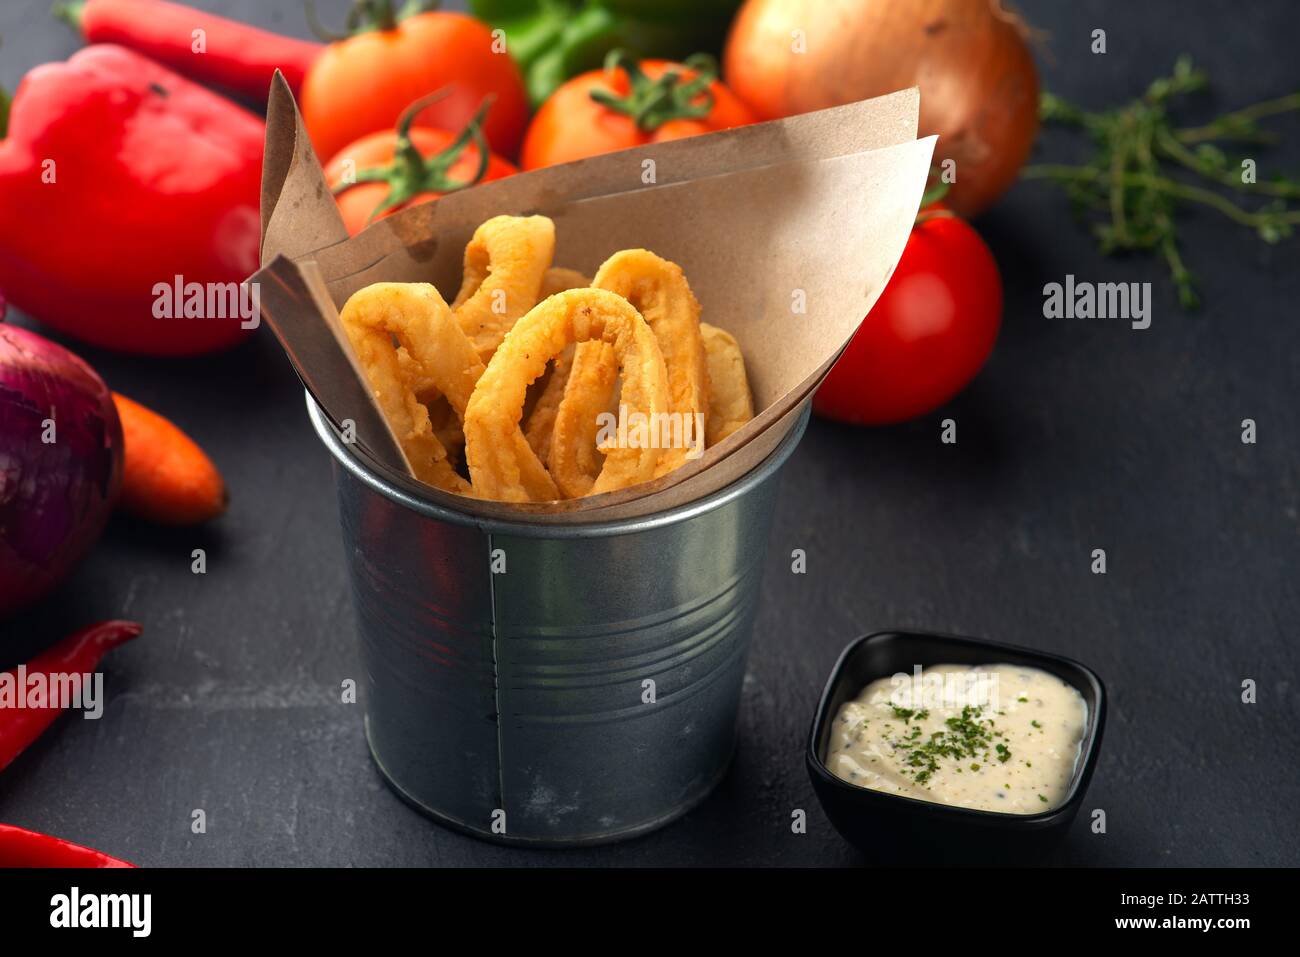 crispy calamari rings on basket with tartar sauce Stock Photo